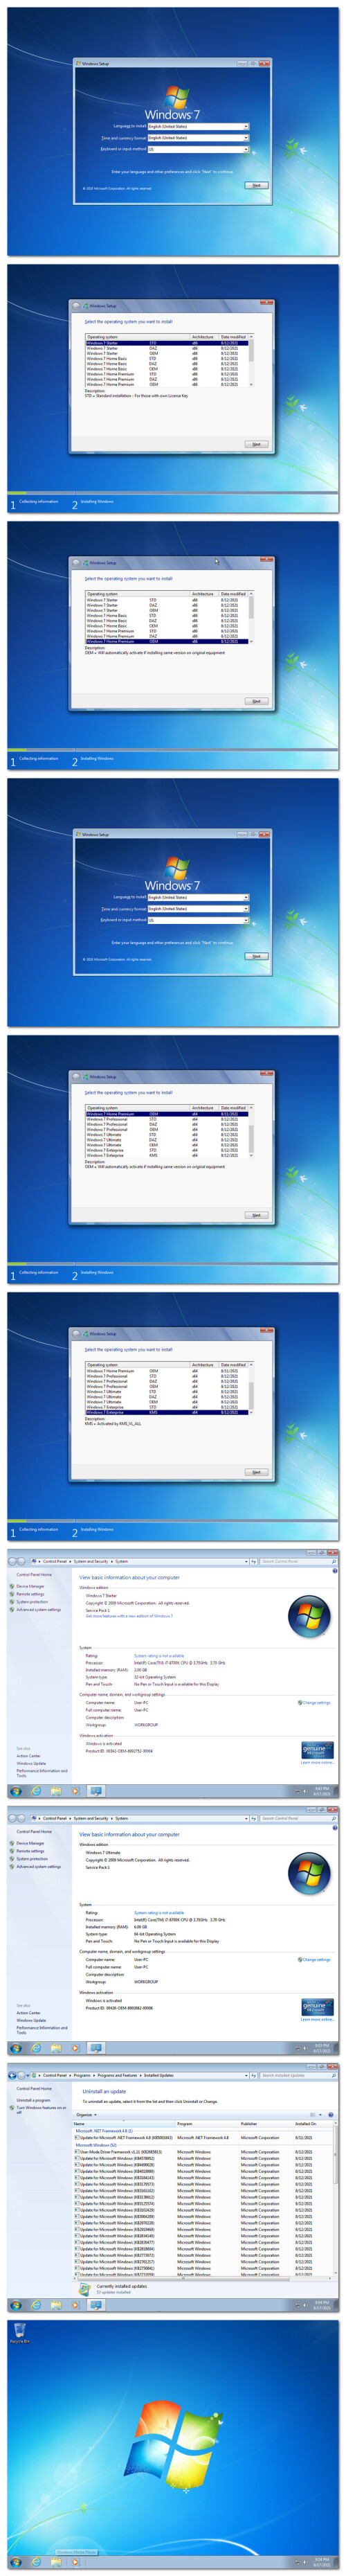 Windows 7 SP1 Dual Boot 31in1 OEM ESD En Us